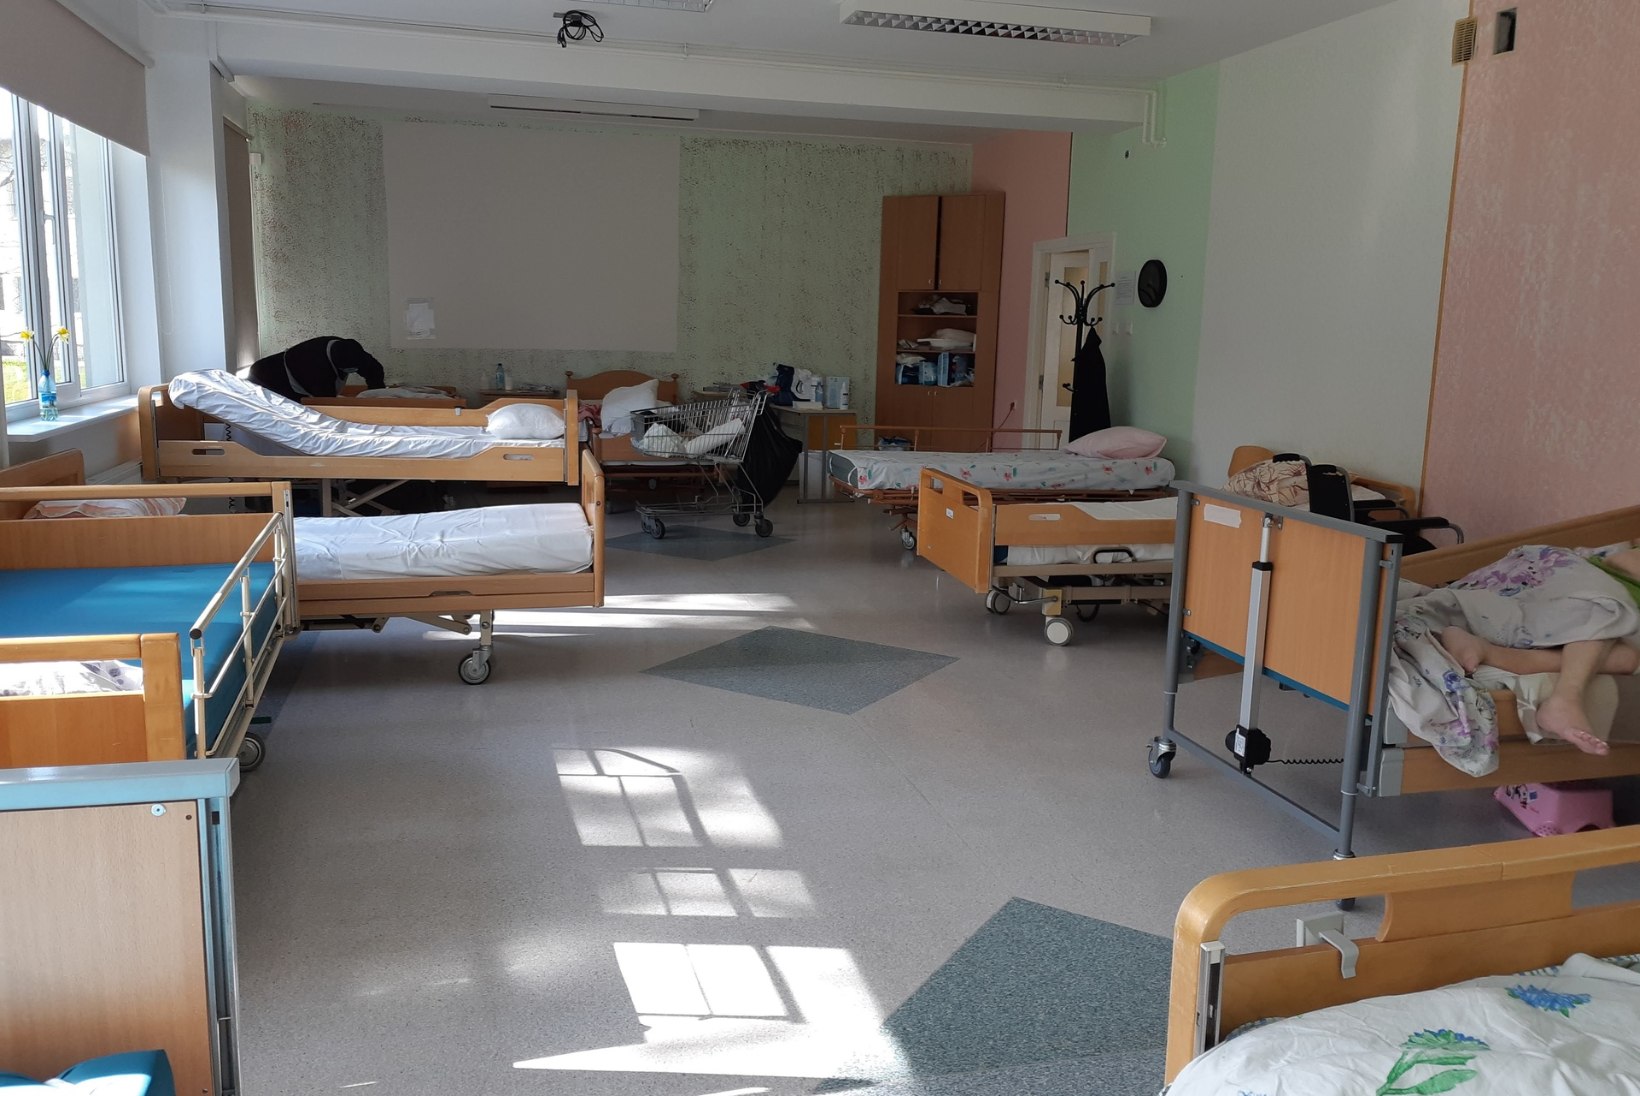 KESET KOROONAPUHANGUT: Saaremaa viirusest räsitud hooldekodus sai töö tehtud tänu vabatahtlikele ja vankumatule kohusetundele